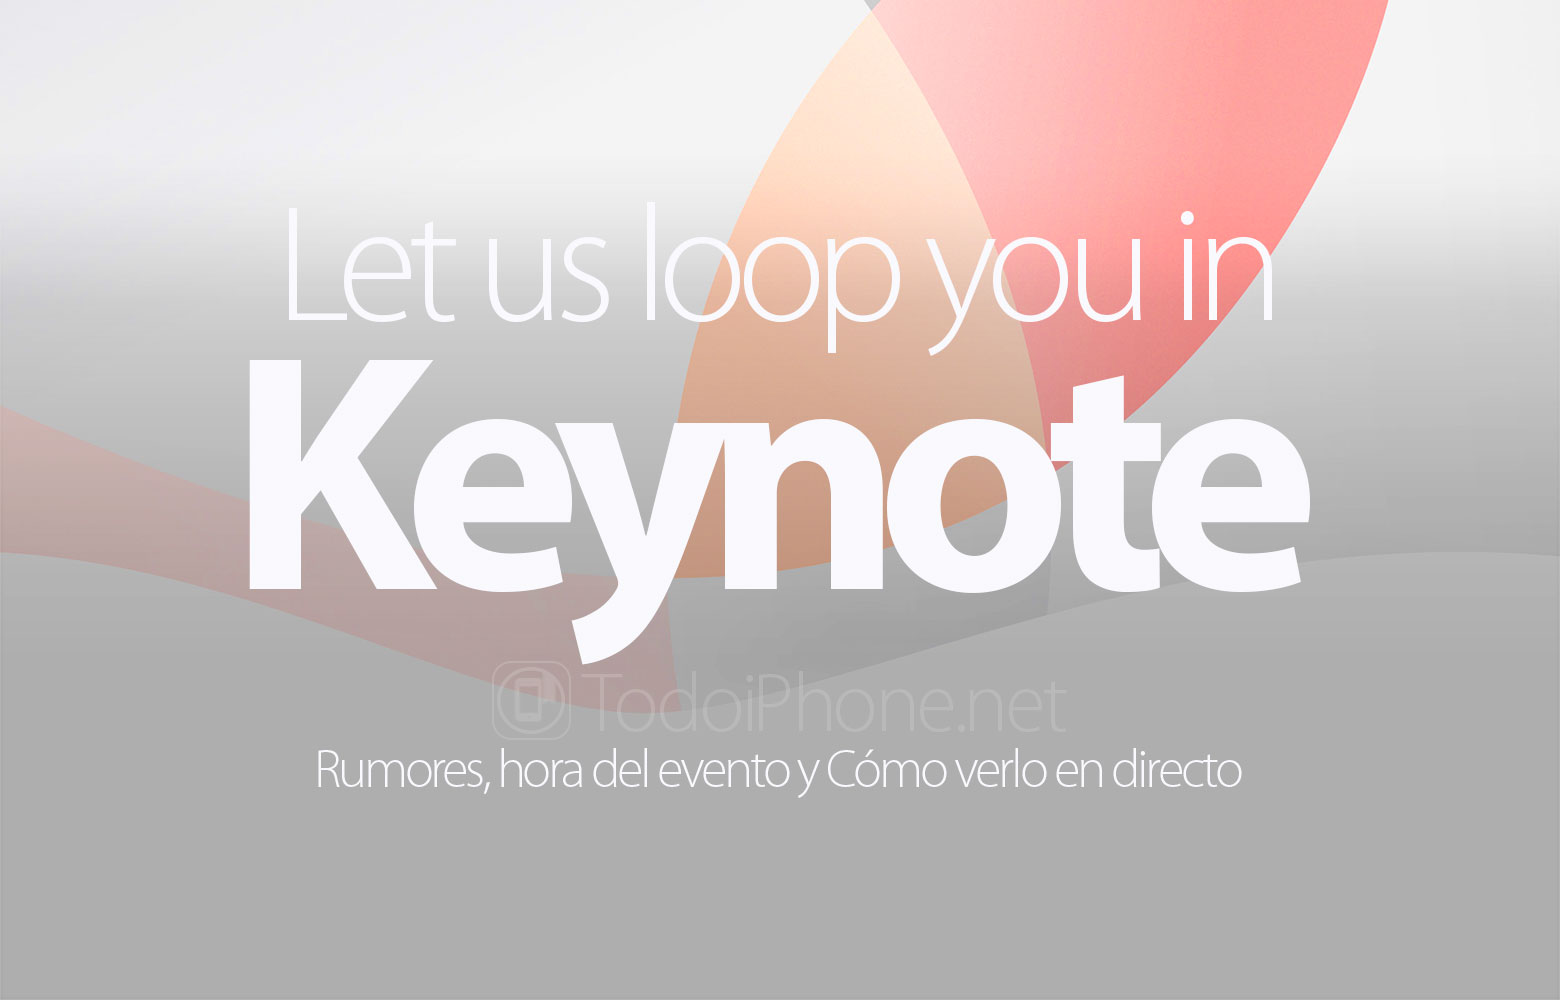 keynote-let-us-loop-you-in-rumores-hora-ver